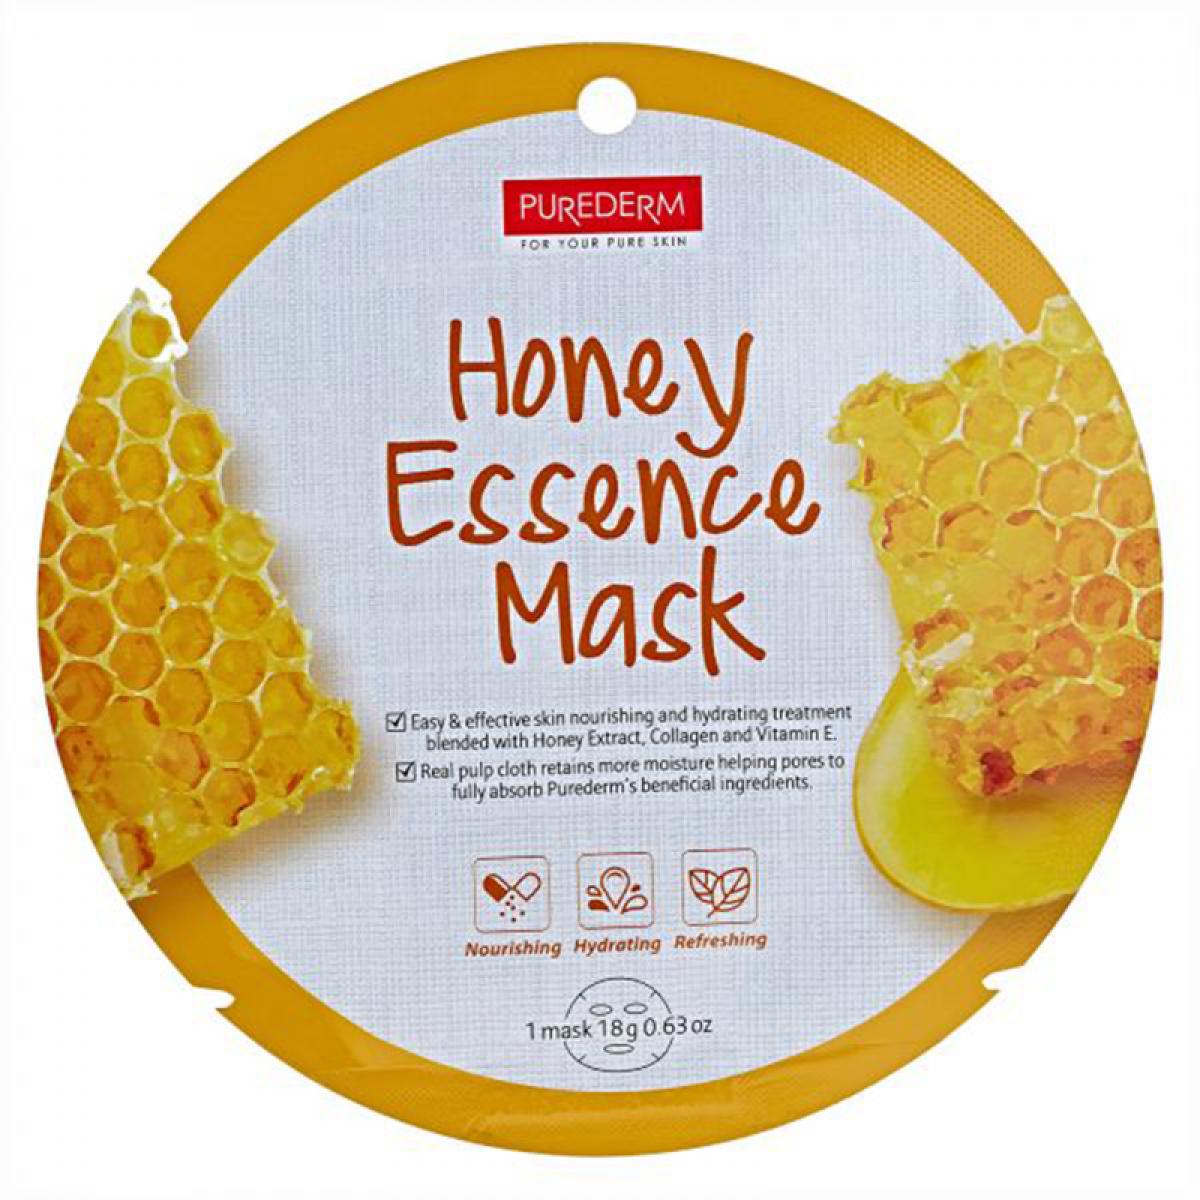 ماسک نقابی صورت حاوی عصاره عسل وزن 18 گرم - Purederm Honey Essence Mask 18gr